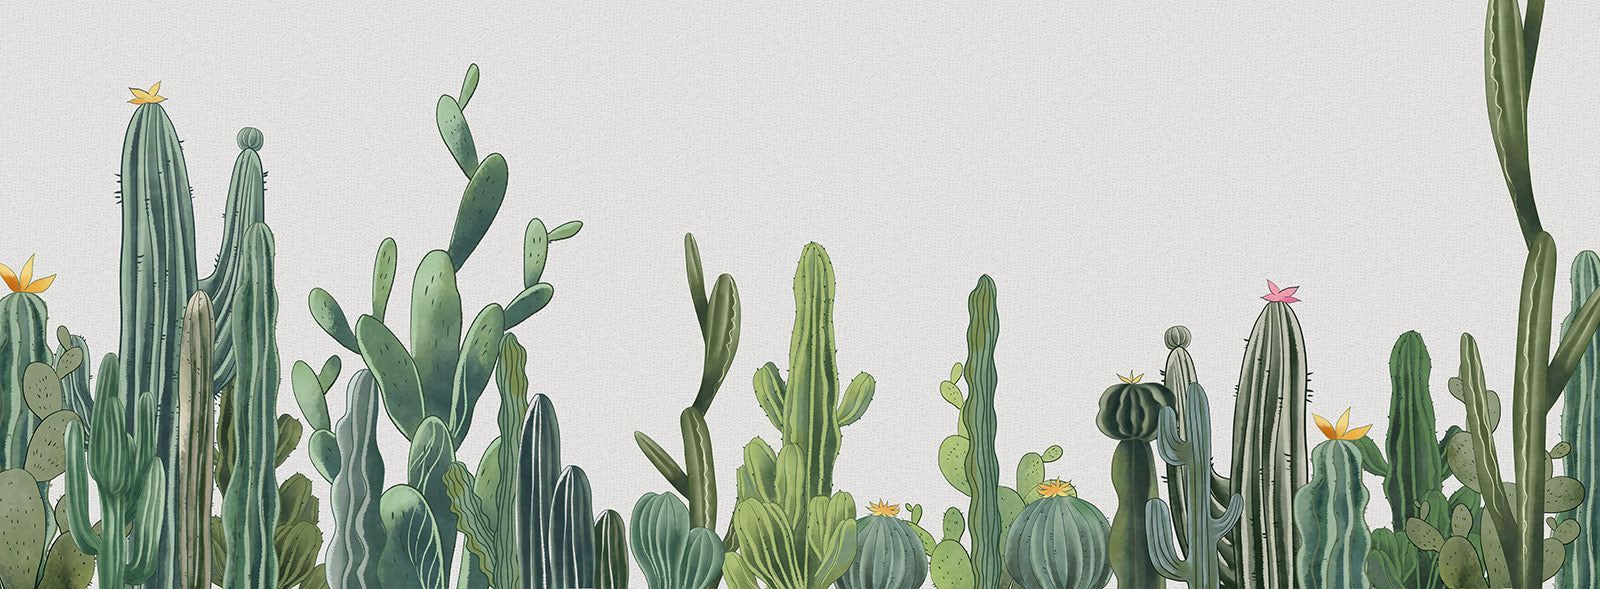 Green Cactus Wallpaper Mural. Botanical Wallpaper UK